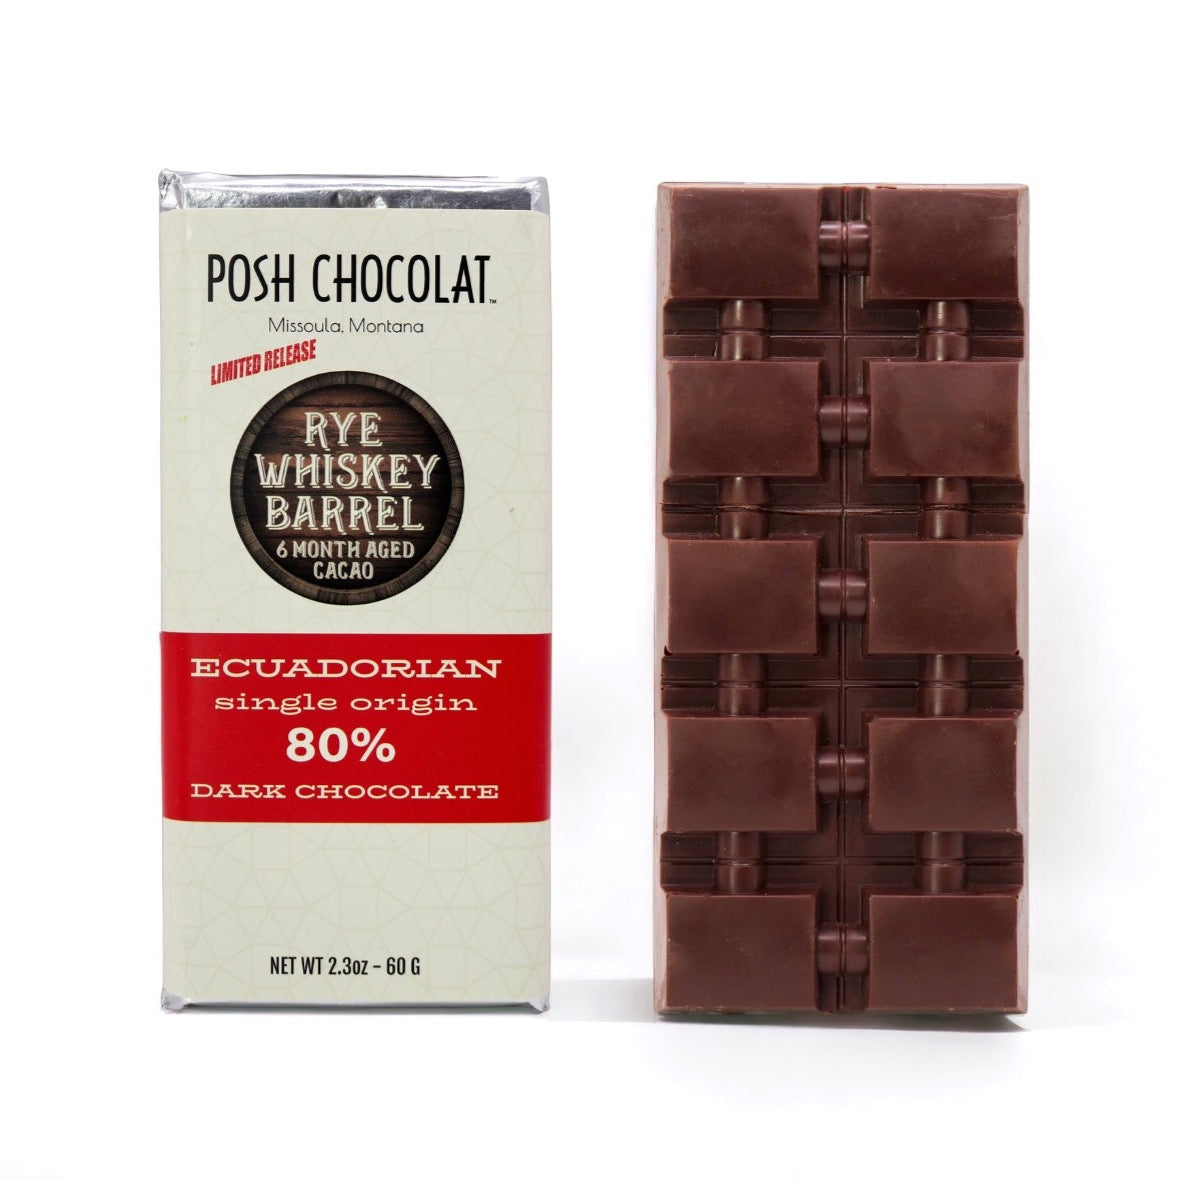 Rye Whiskey Barrel 6 Month Aged 80% Single Origin Ecuadorian Dark Chocolate Bar